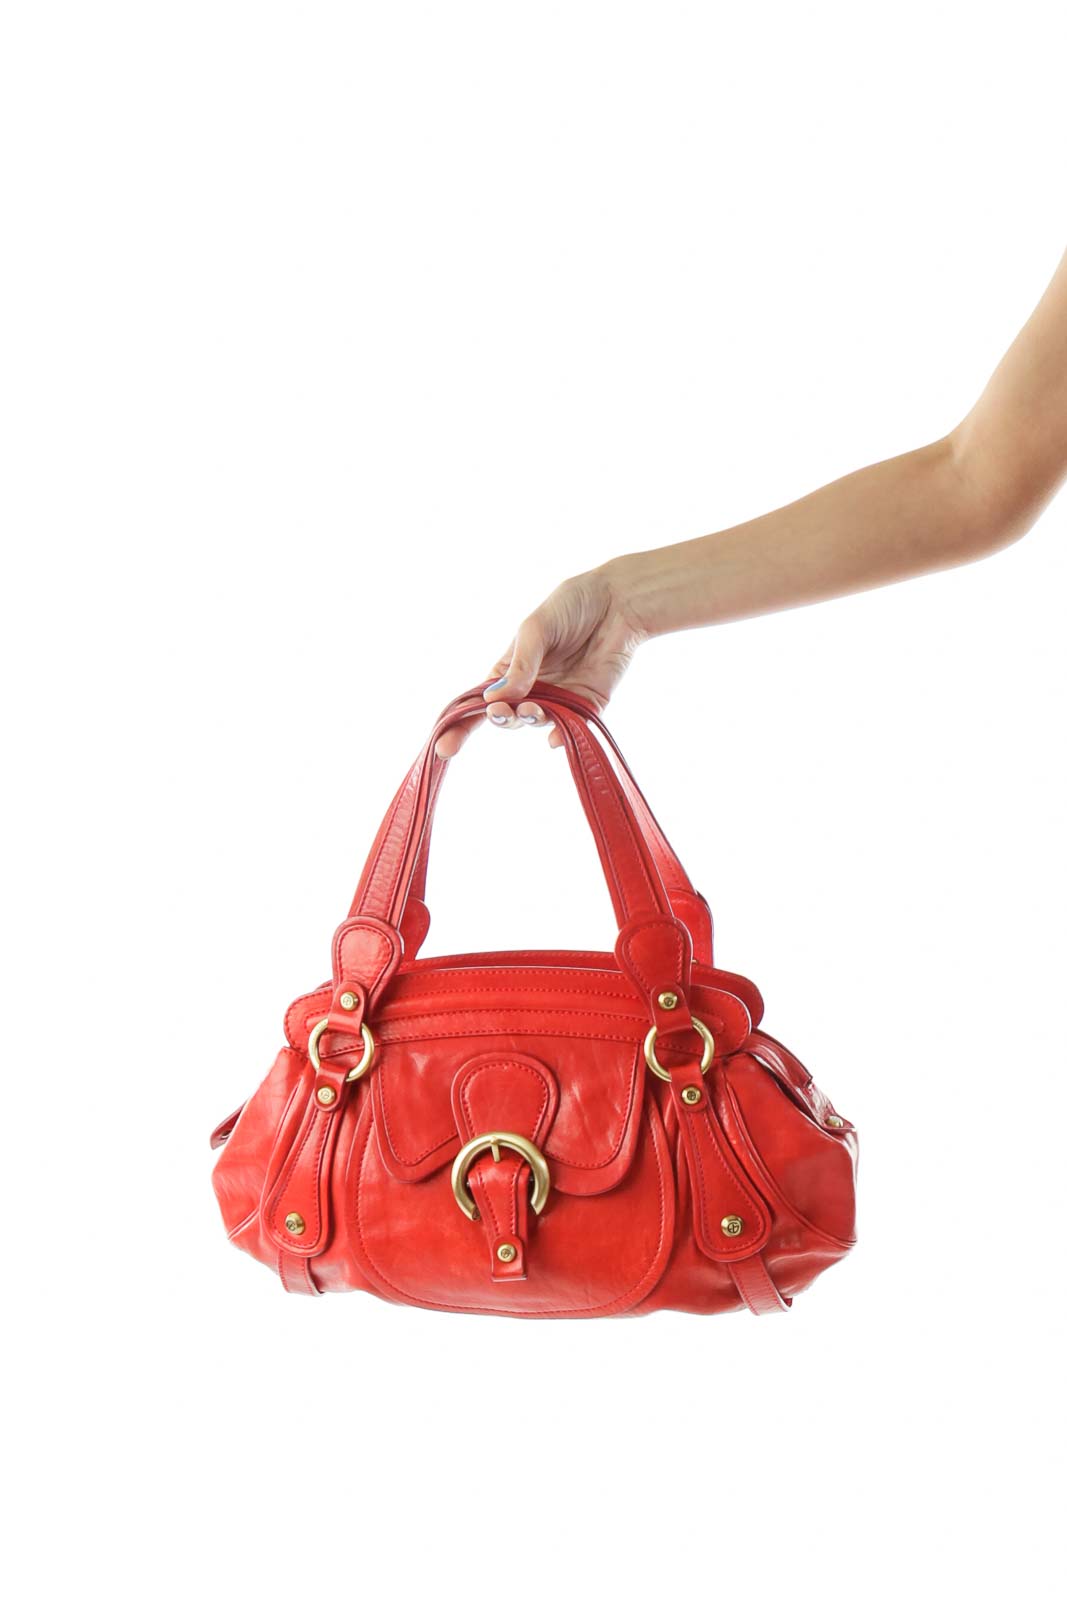 Red Buckled Leather Shoulder Bag Front